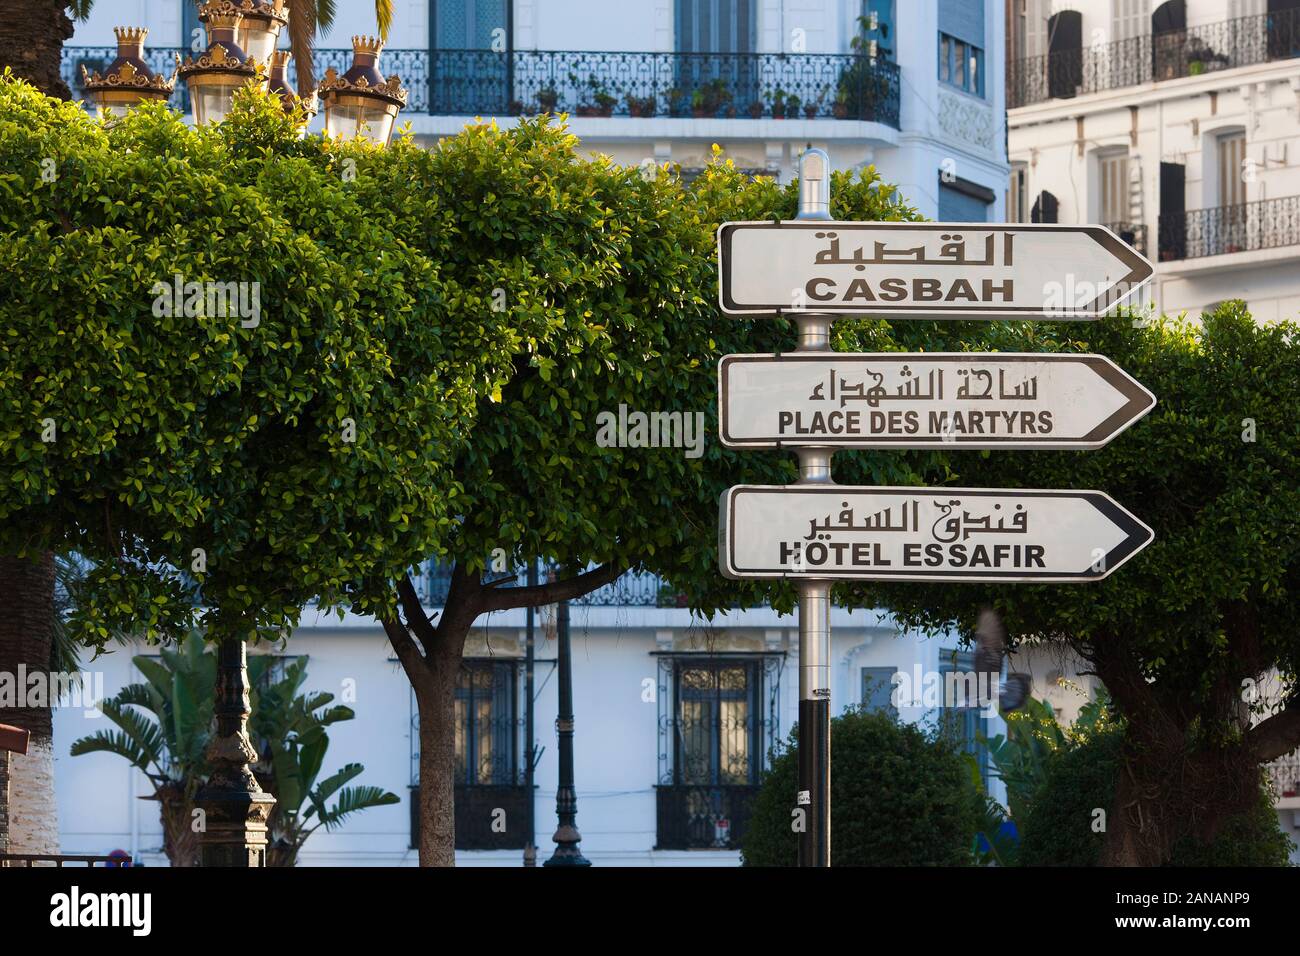 Algier das Weiß bezieht sich auf weiße Reihenbauten an und um die Promenade des Sablettes, die der Stadt ihren ikonischen Look verleihen. Algier Algerien. Stockfoto